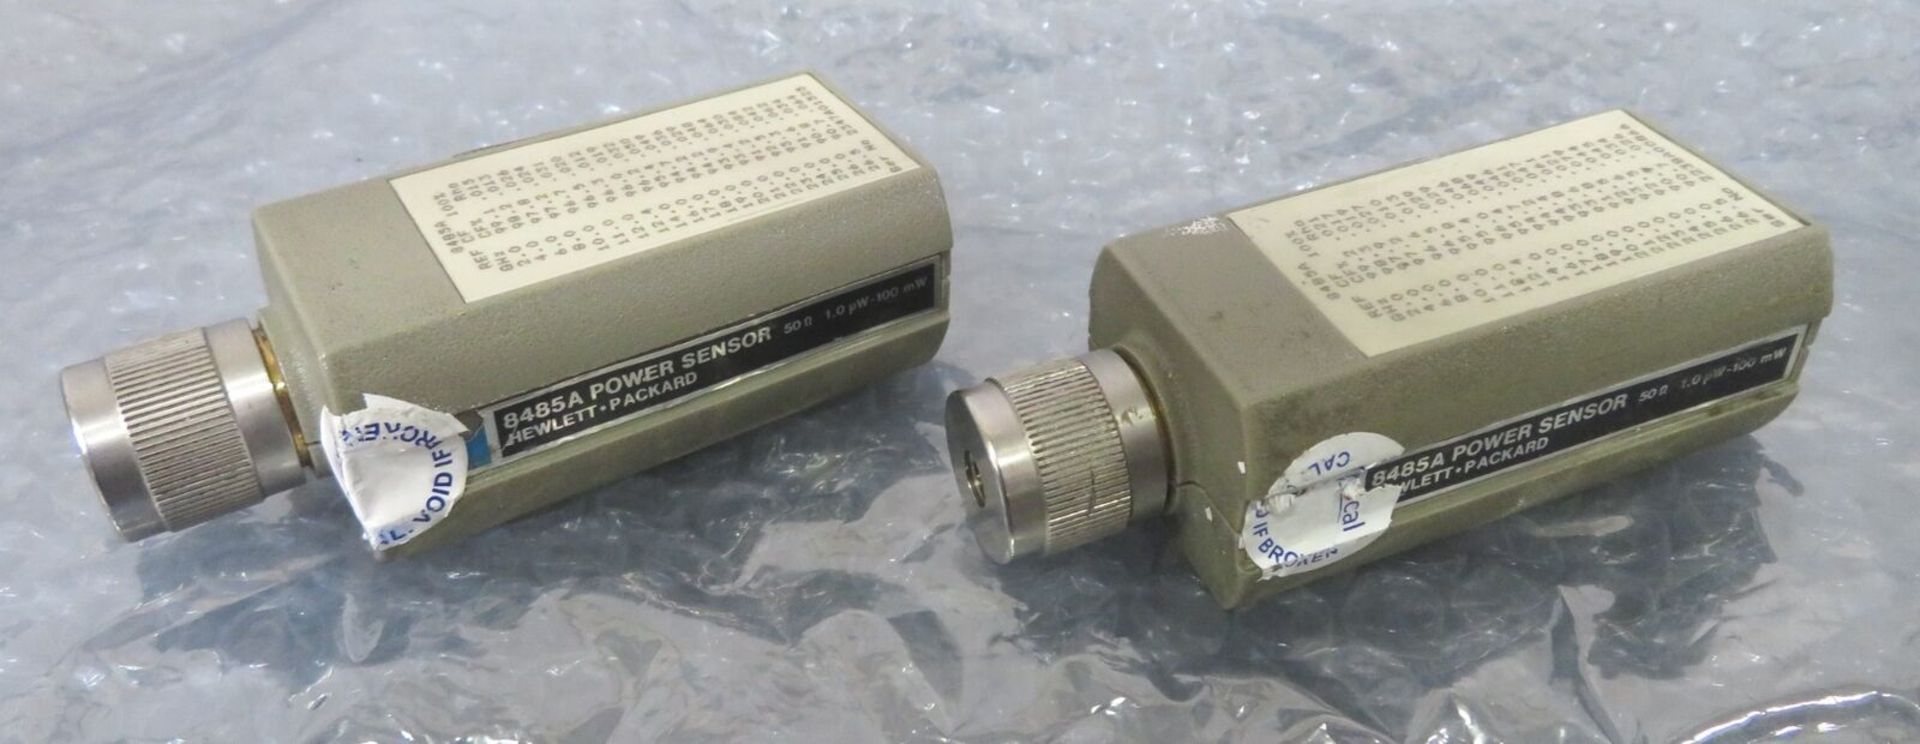 Lot 2 HP 8485A Power Sensor (50Ohm, 1.0uW-100mW) - Gilroy